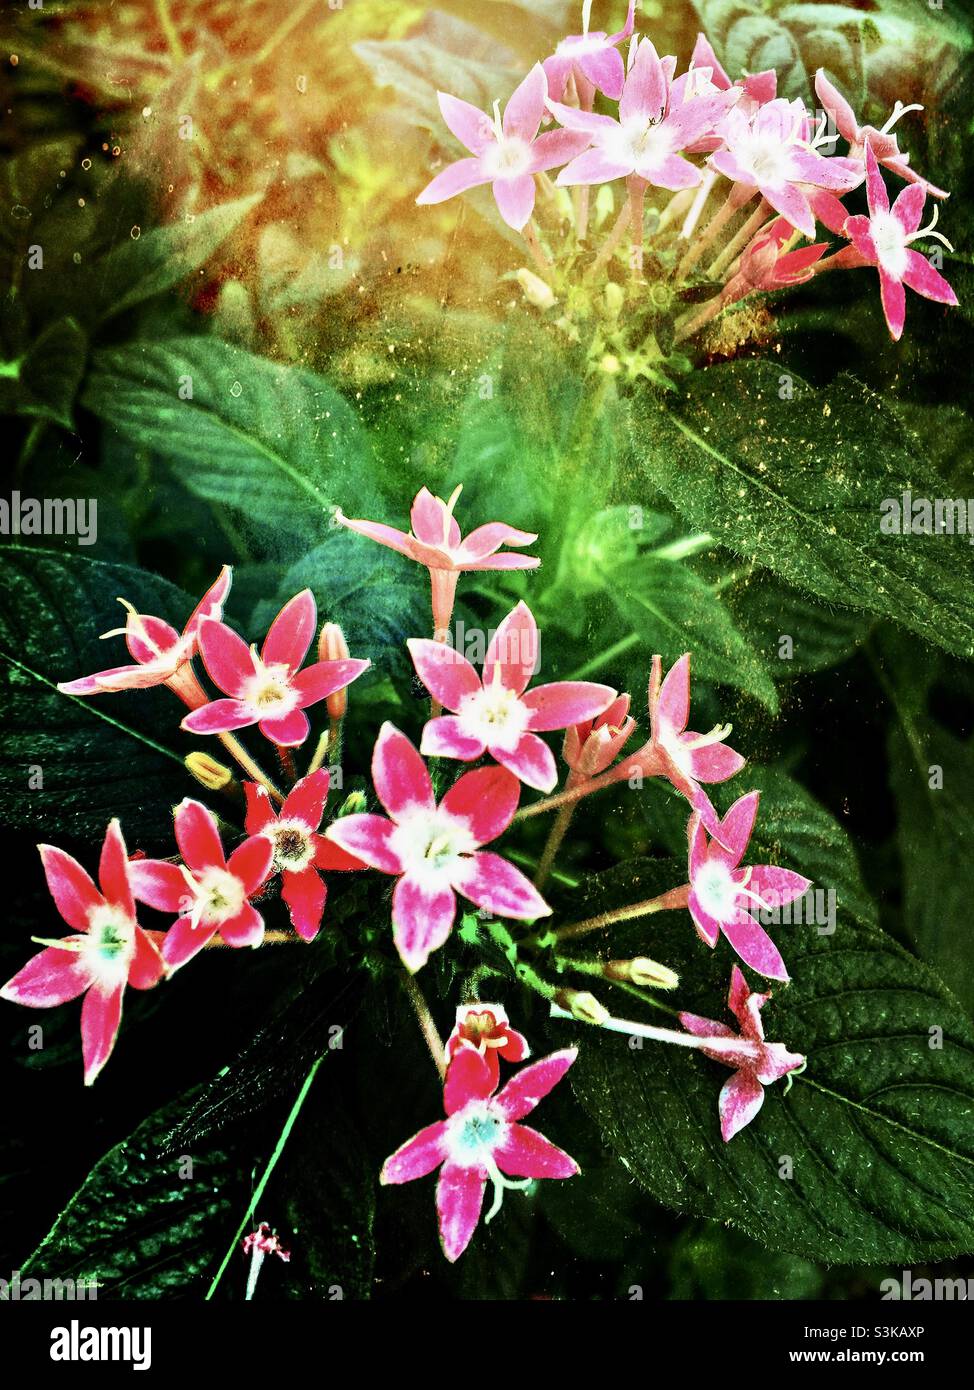 Büschel Pentas Blumen wachsen in einem Garten. Texturen und Effekte für einen künstlerischen Look hinzugefügt. Stockfoto